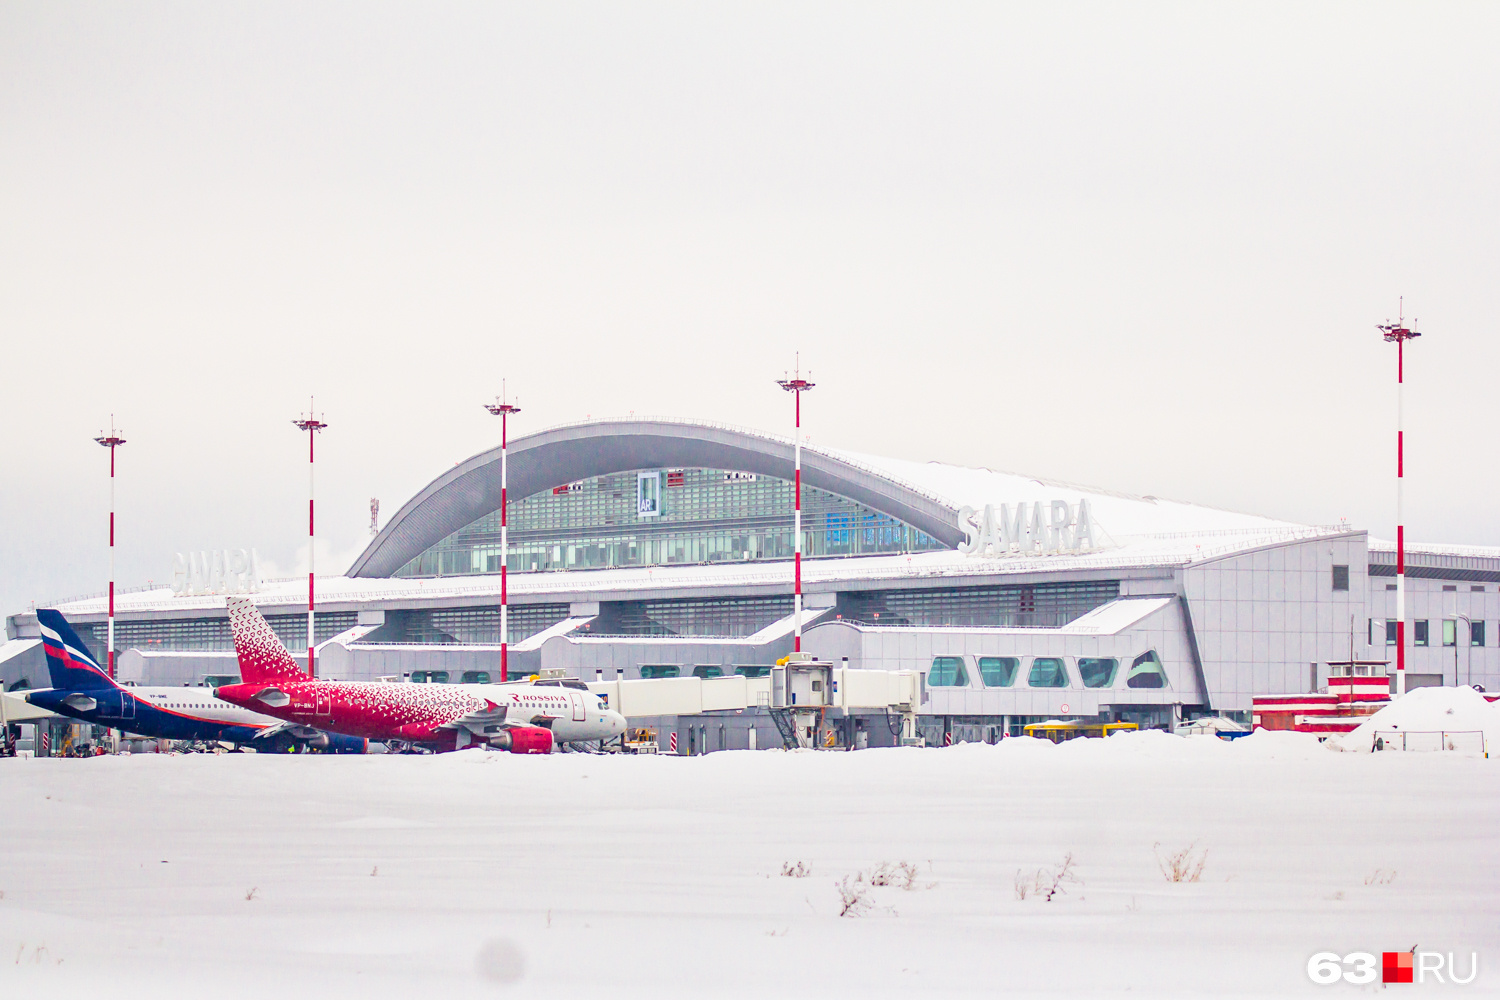 Аэропорт Курумоч эвакуировали из-за сообщения о минировании самолетов - 26 января 2022 - 63.ru